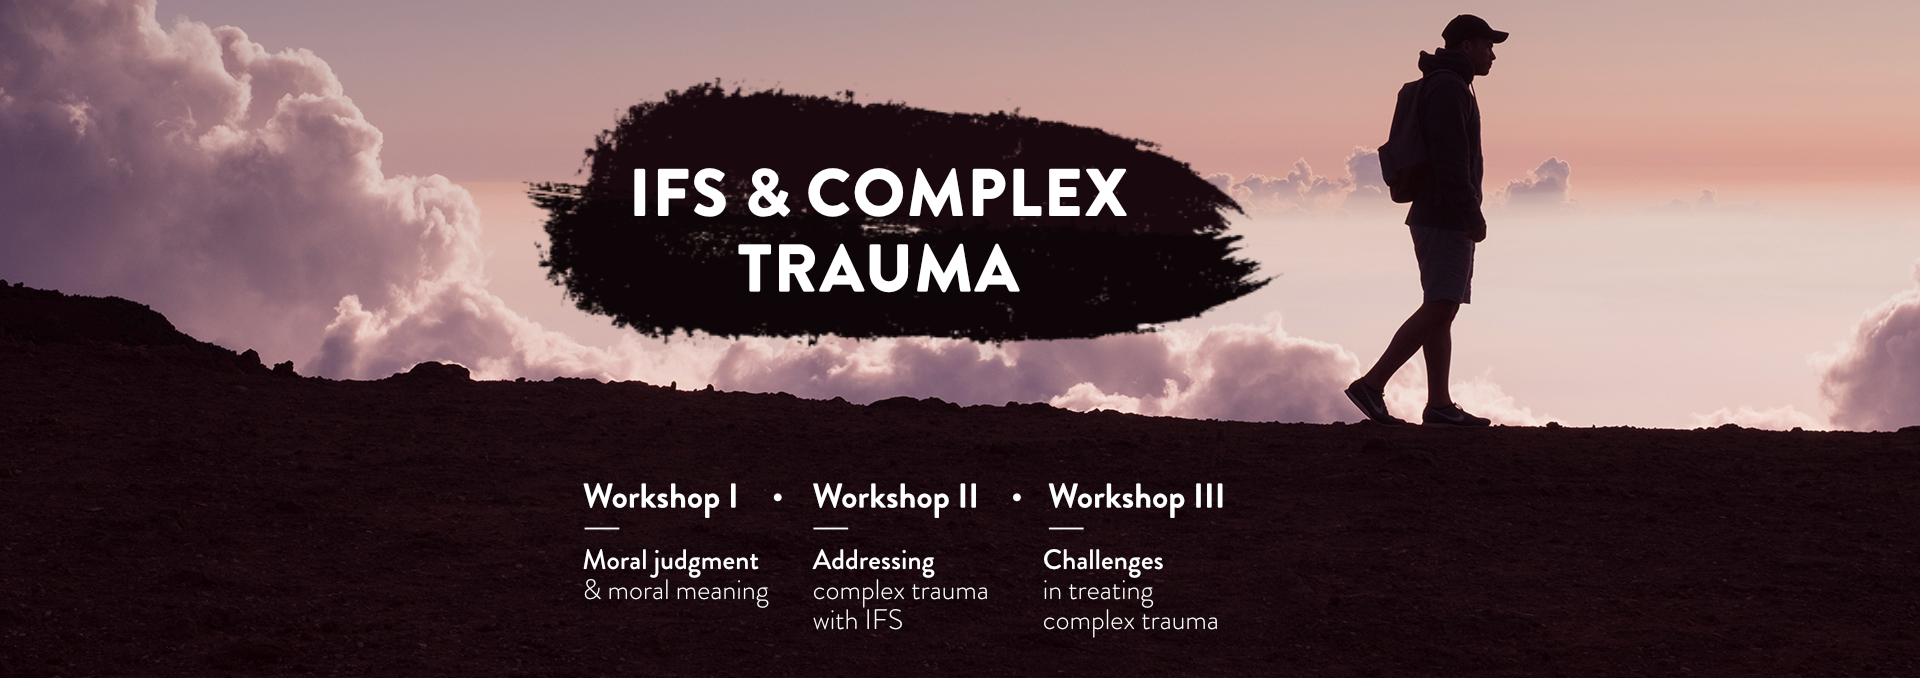 IFS & Complex trauma [LP] 21